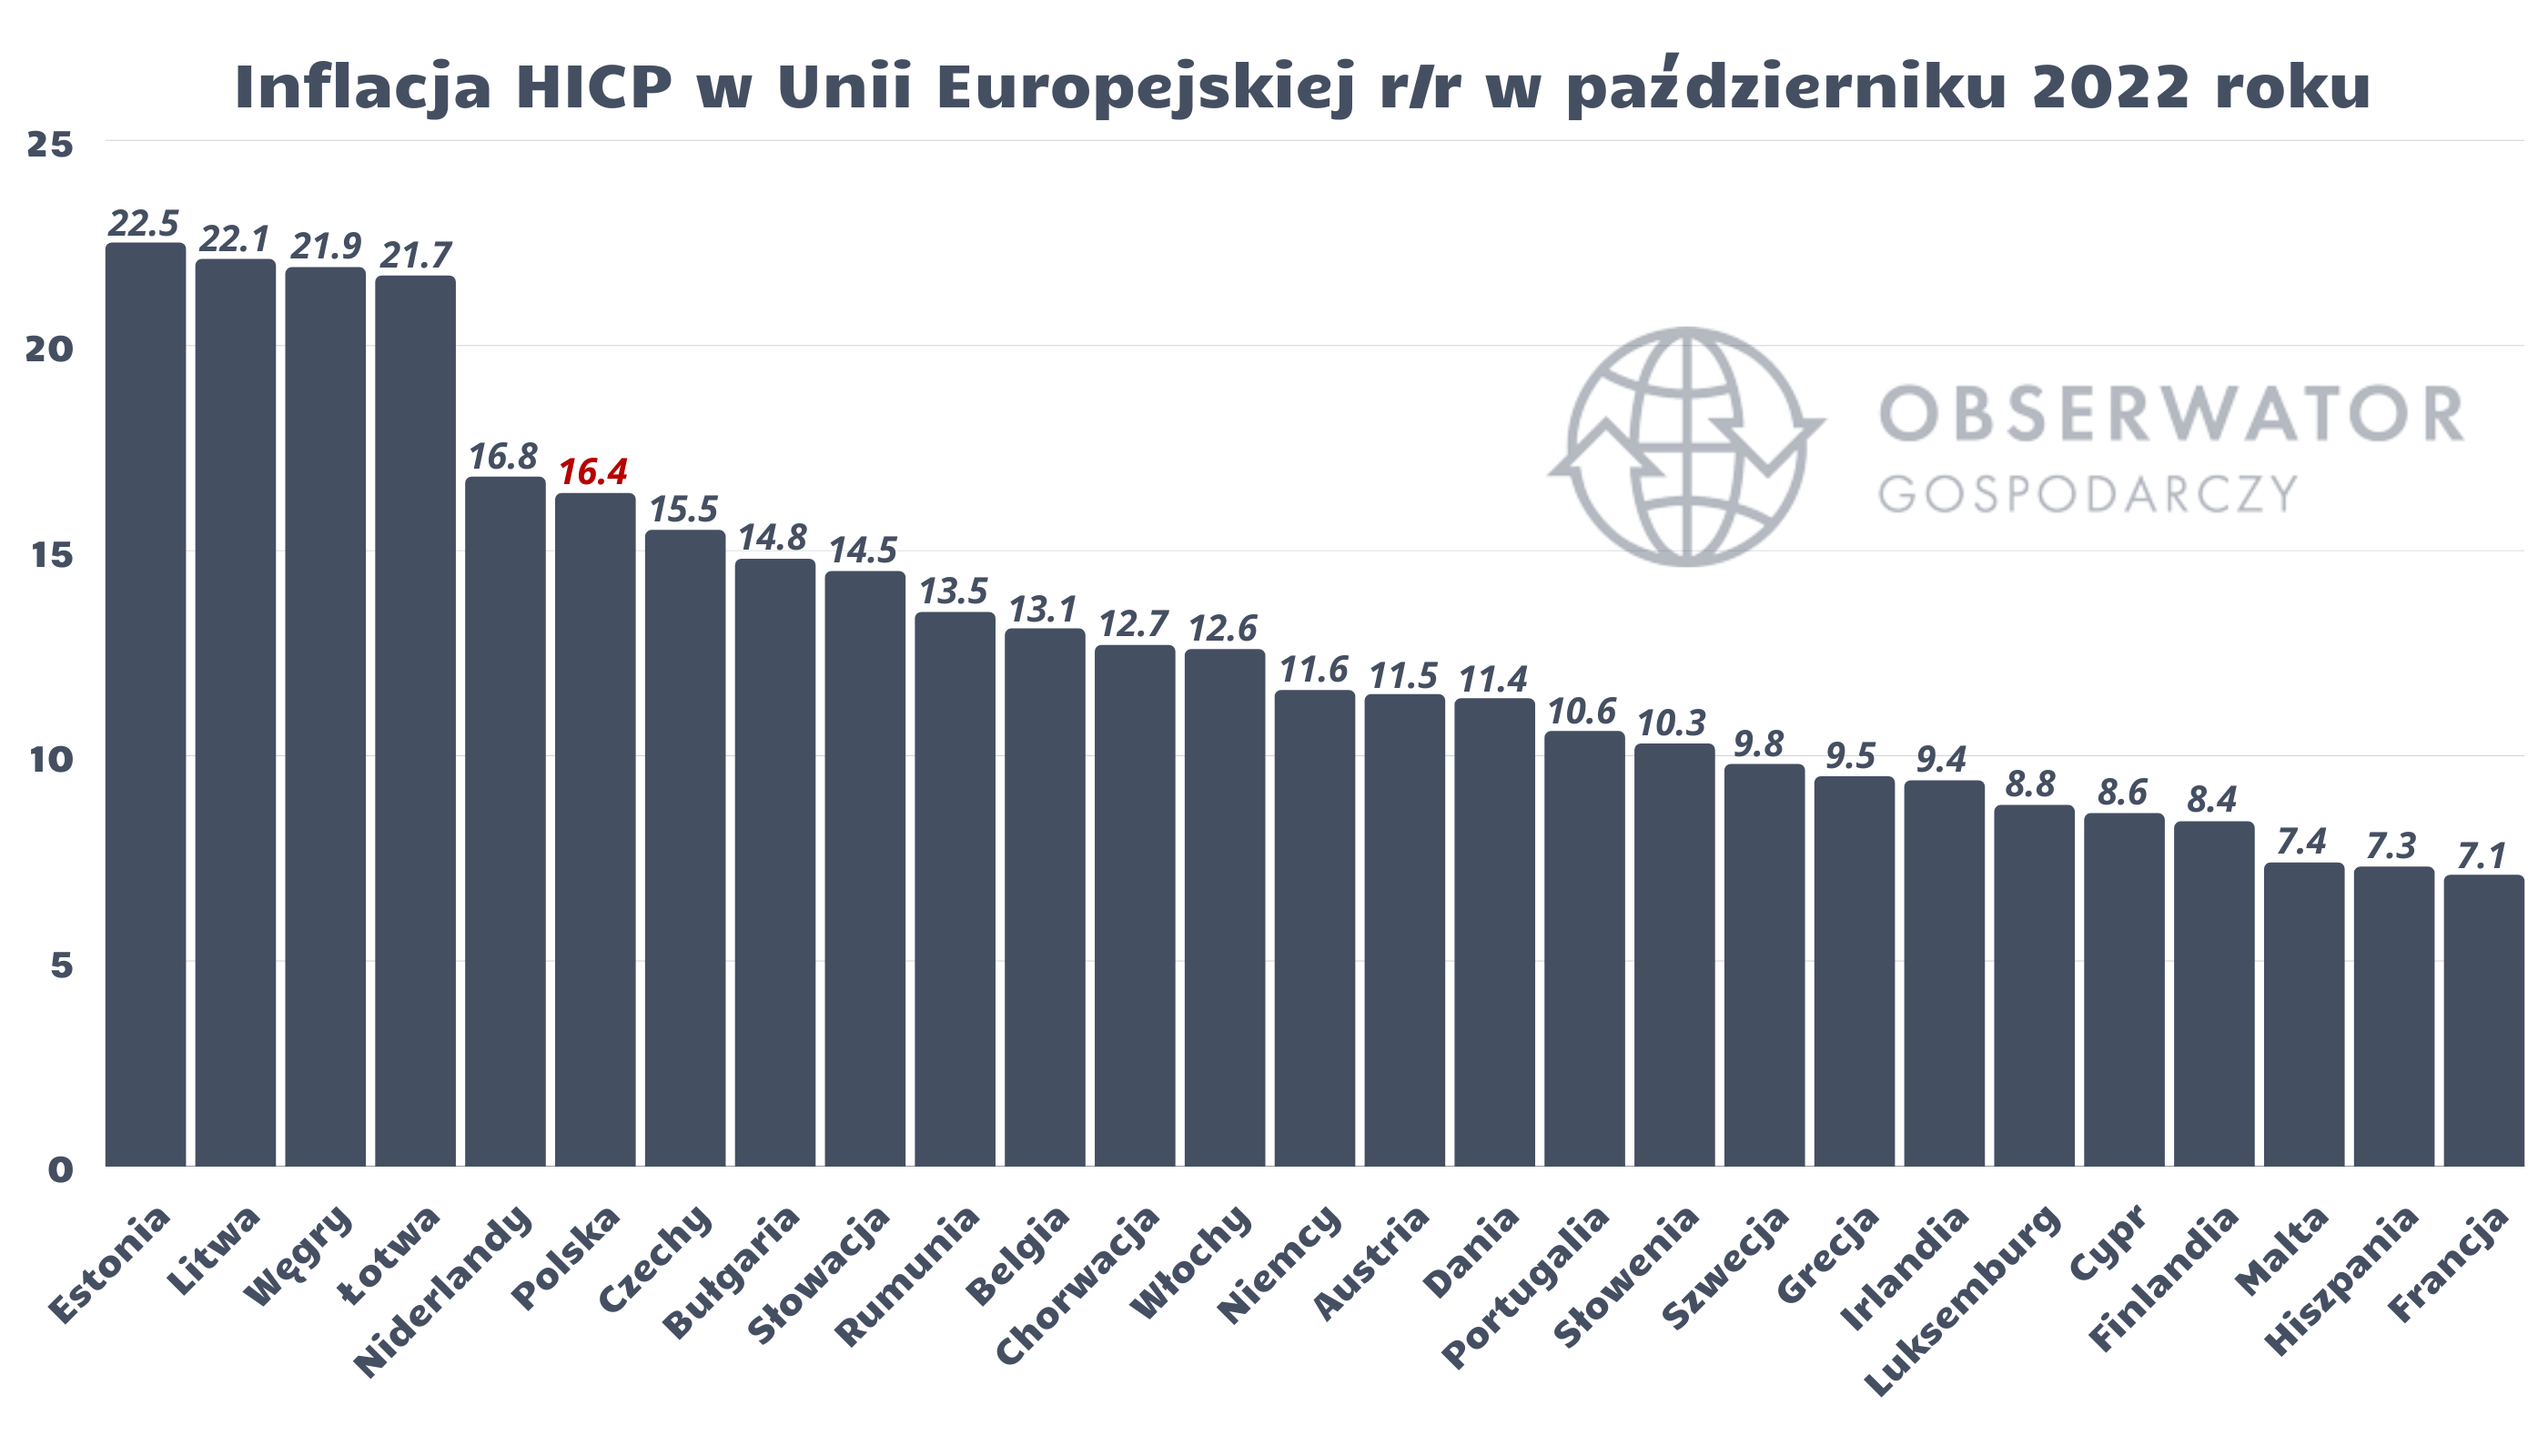 Październikowa inflacja w Unii Europejskiej - HICP